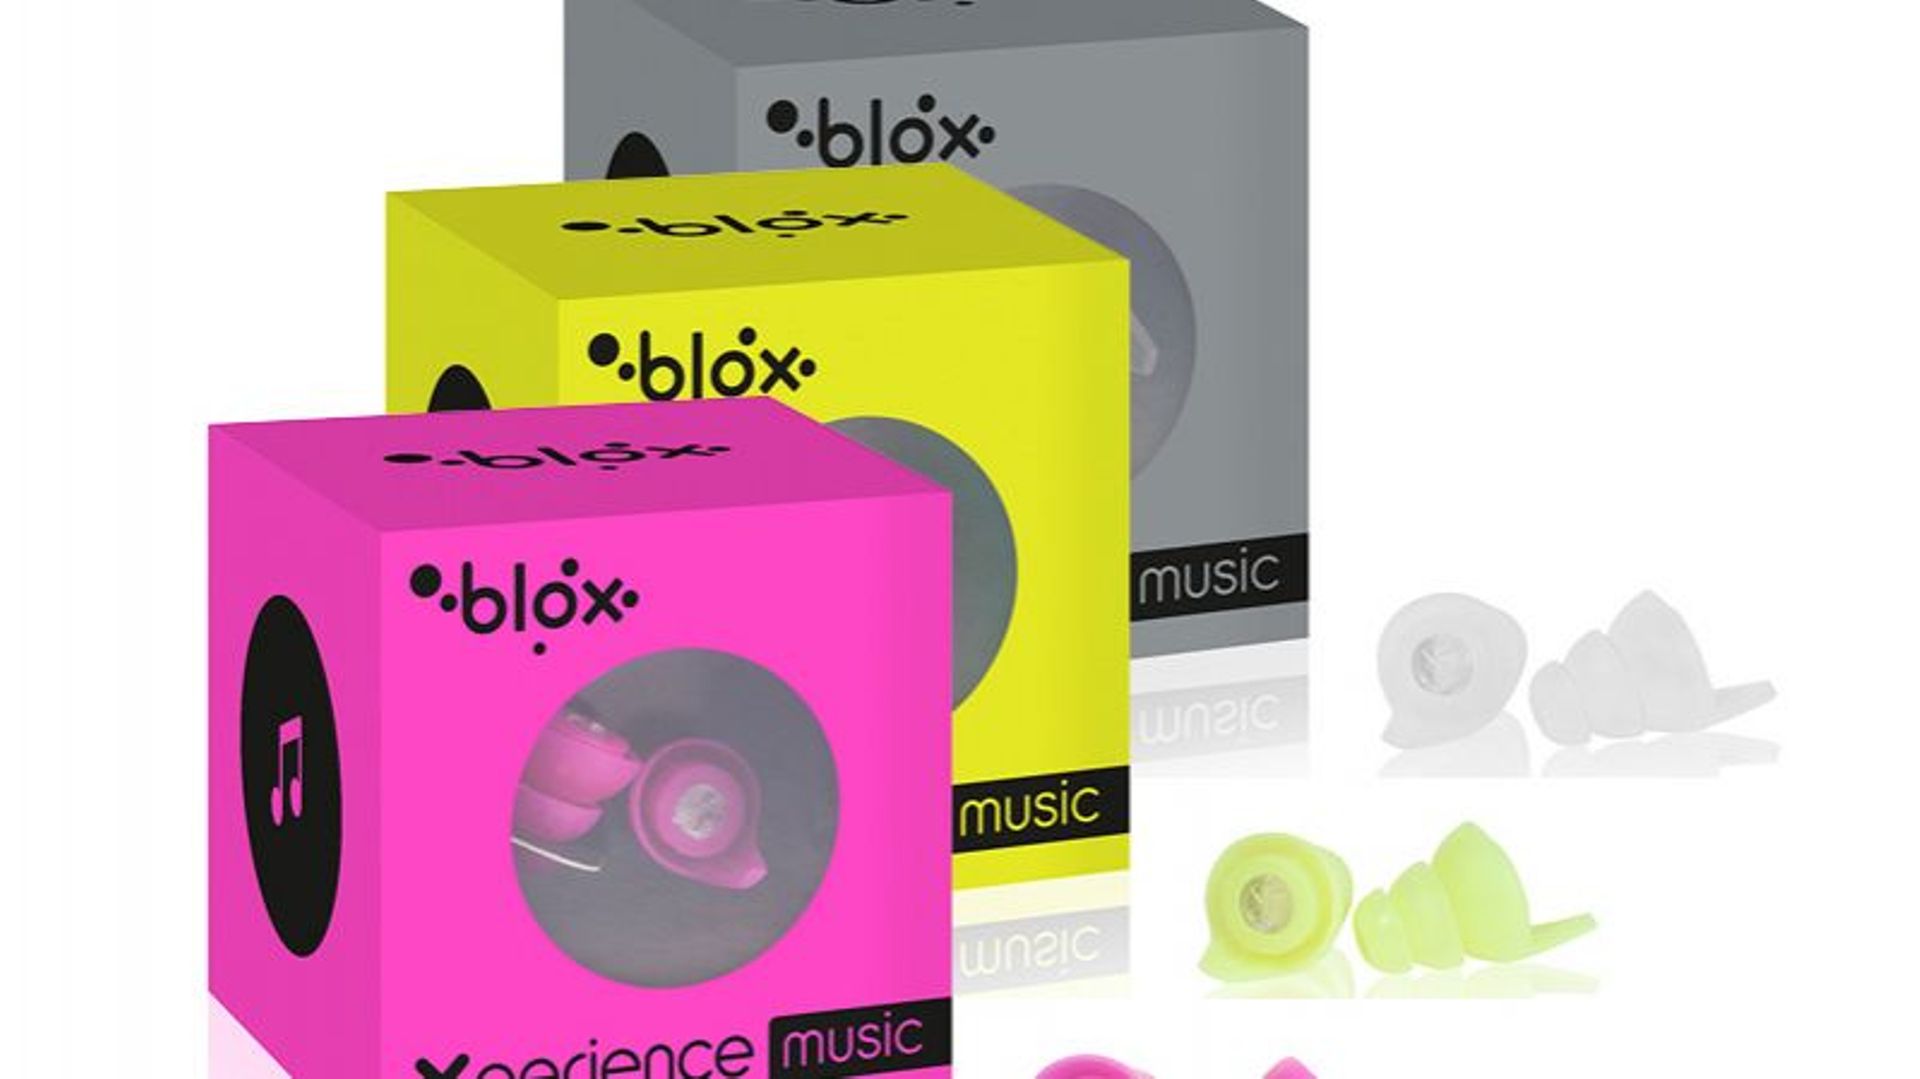 Blox Xperience, des bouchons d'oreille avec filtre acoustique!